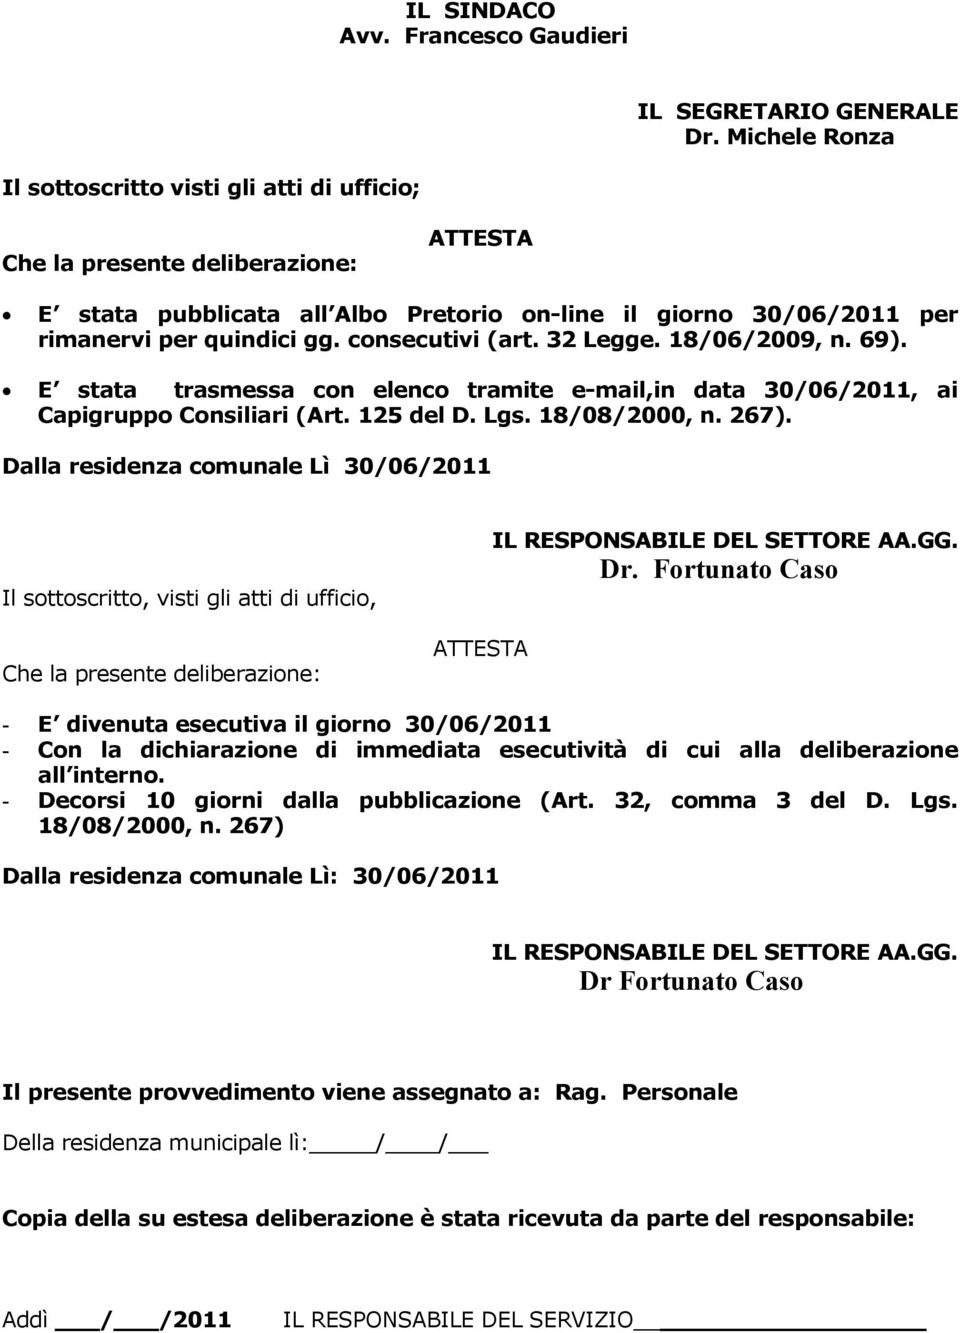 consecutivi (art. 32 Legge. 18/06/2009, n. 69). E stata trasmessa con elenco tramite e-mail,in data 30/06/2011, ai Capigruppo Consiliari (Art. 125 del D. Lgs. 18/08/2000, n. 267).